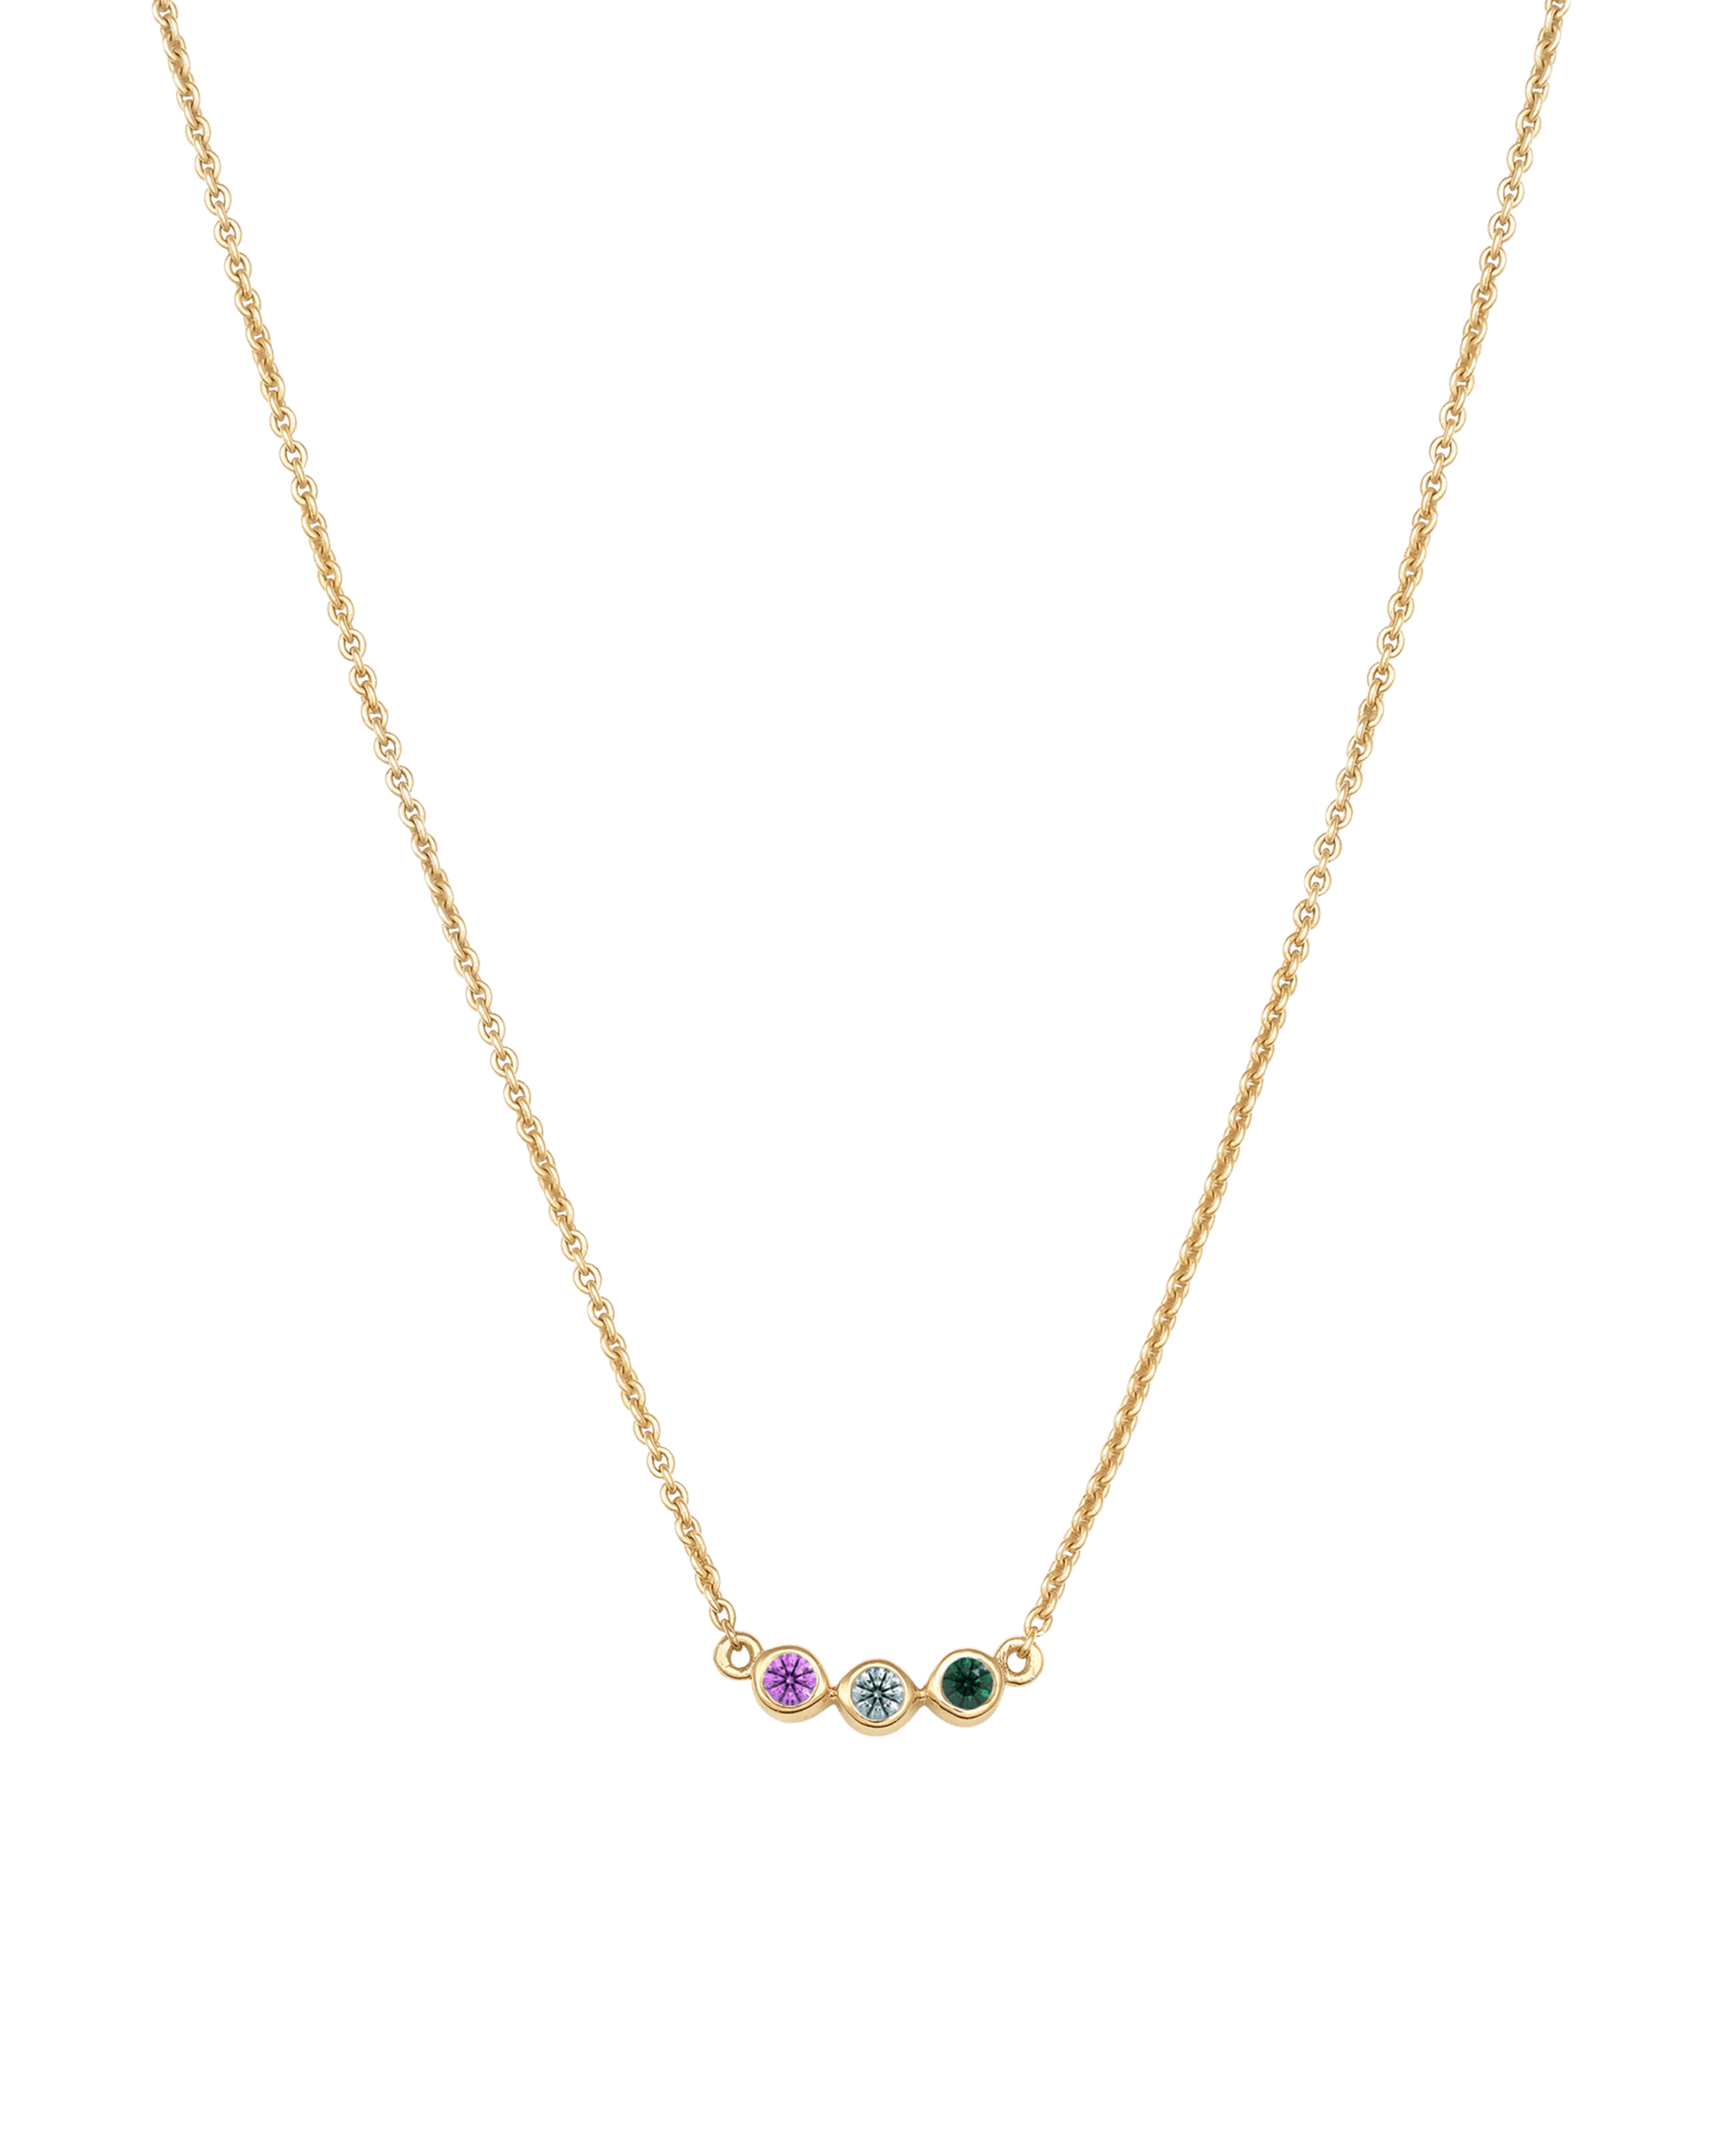 Bauble Birthstone Necklace - 18K Gold Vermeil Necklaces Gold Vermeil 3 Birthstones Small - 16" 